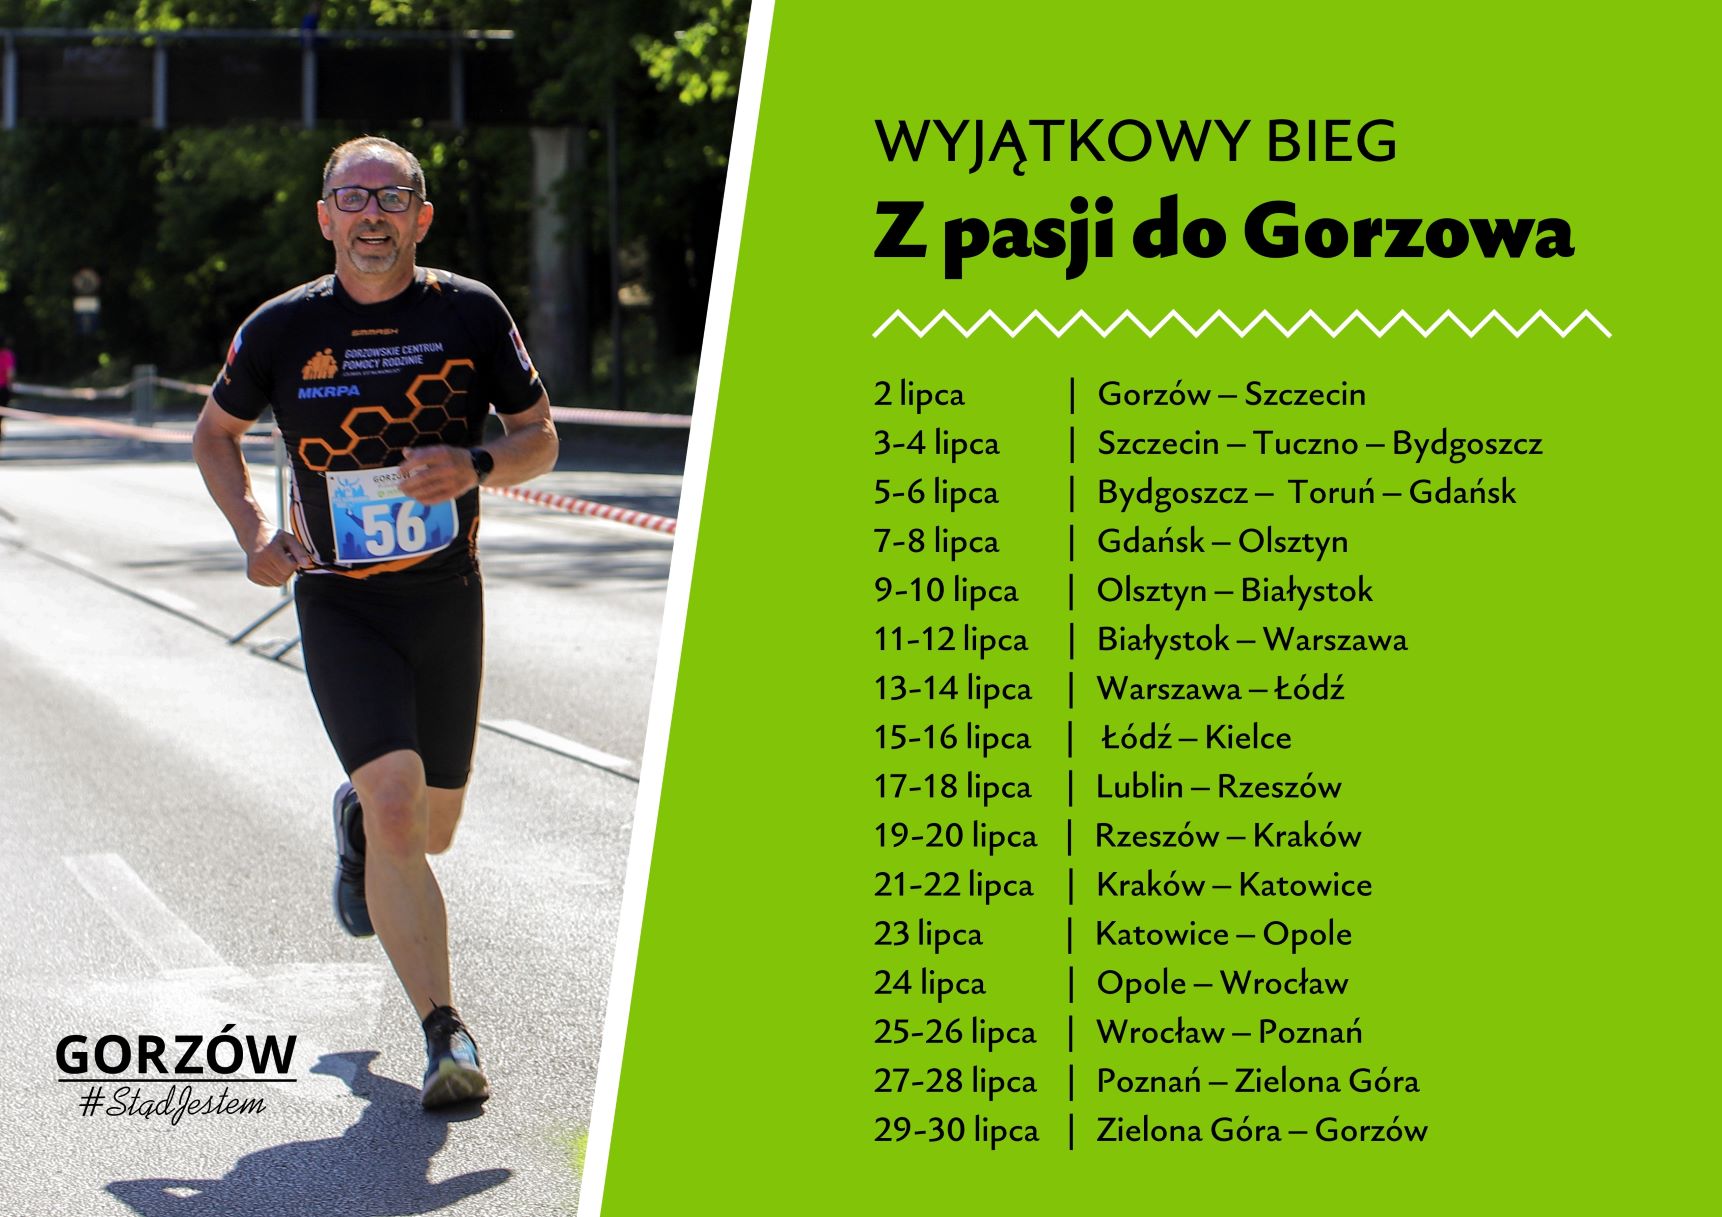 Bieg z pasji do Gorzowa